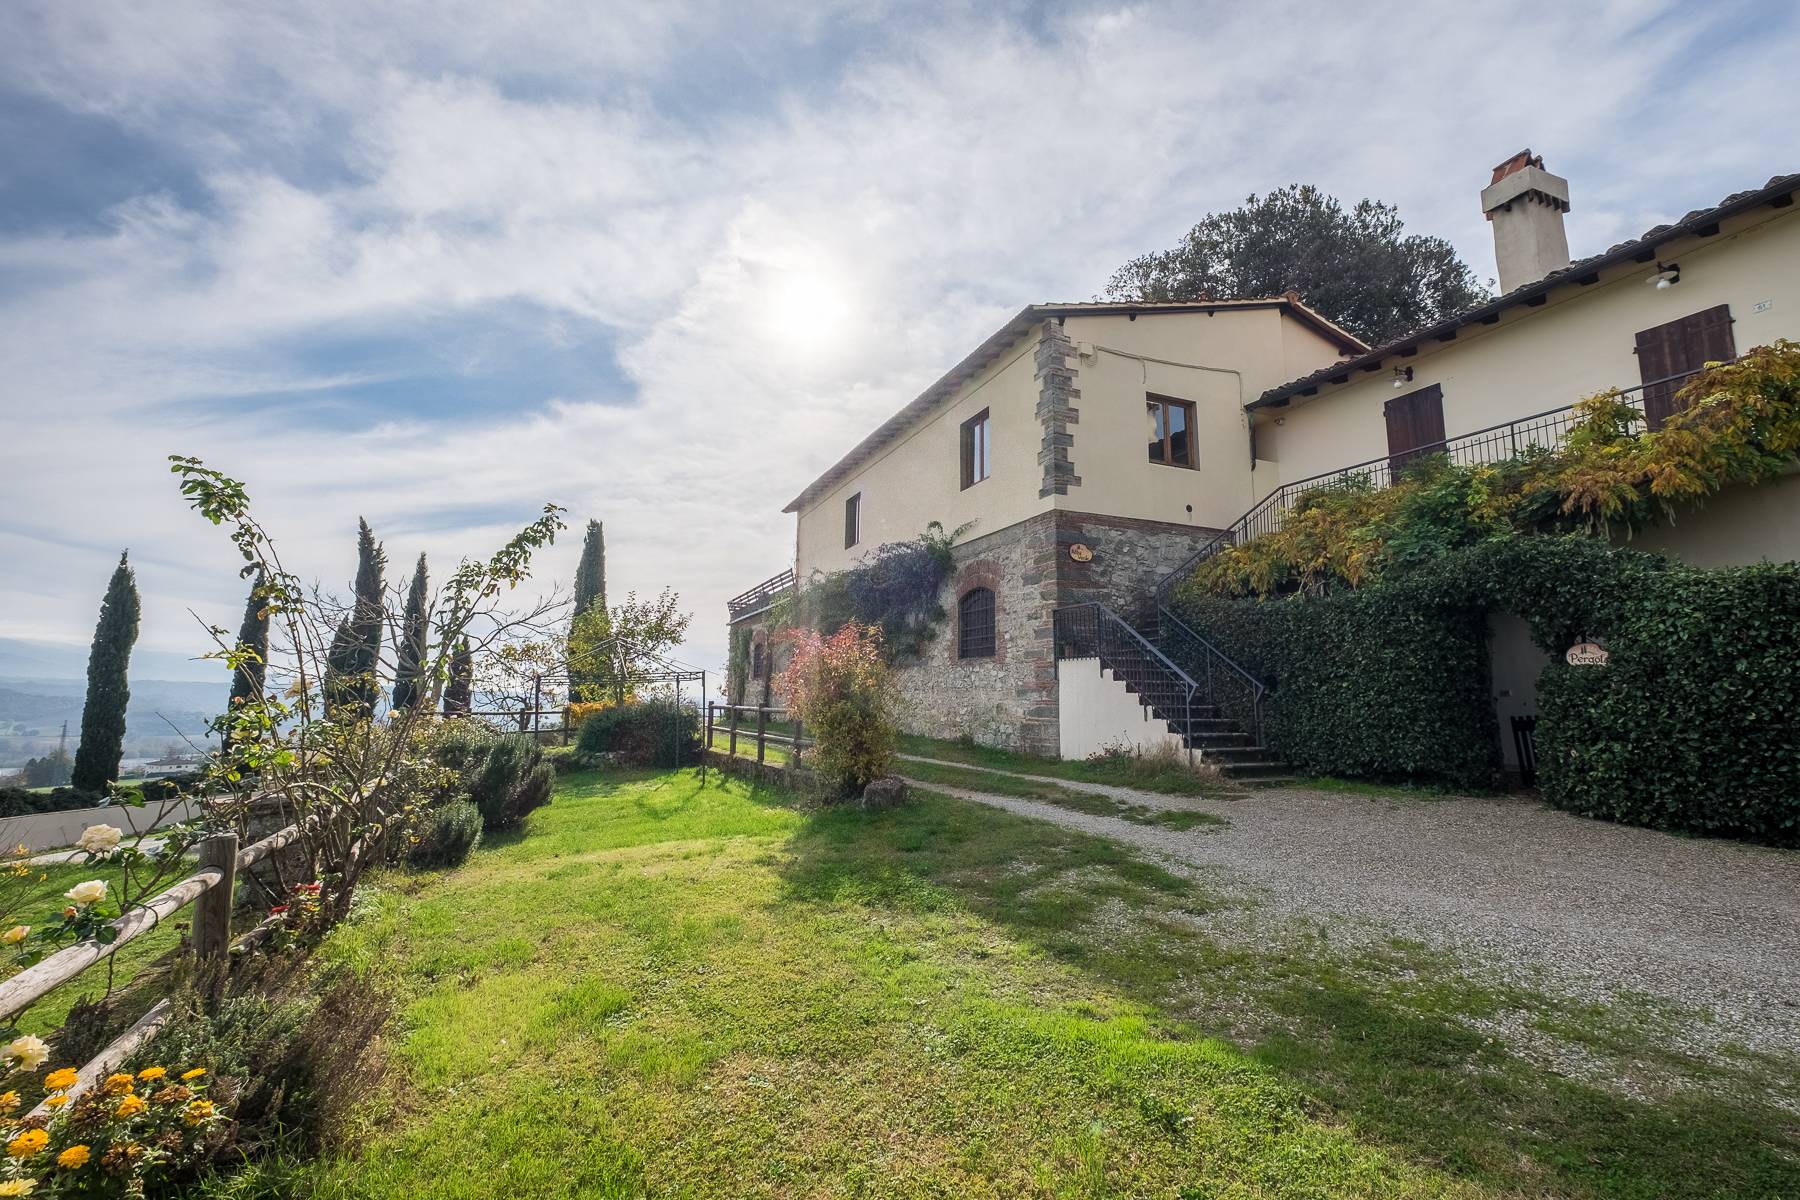 Villa in Vendita a Rignano Sull'Arno: 5 locali, 3000 mq - Foto 27